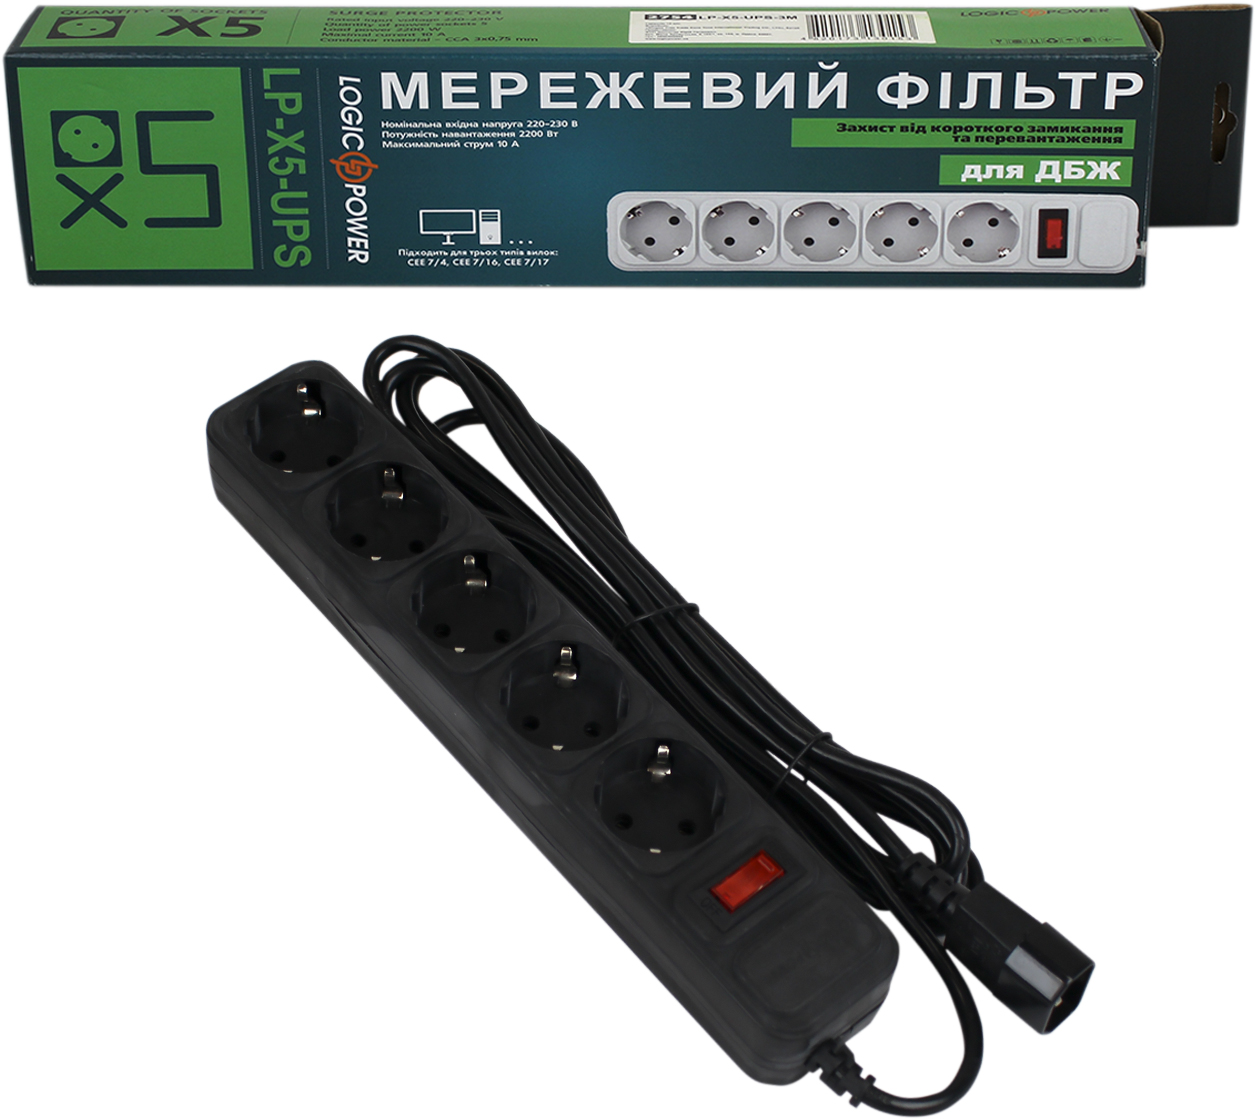 Отзывы сетевой фильтр LogicPower LP-X5 -UPS-3M к ИБП (2754) в Украине